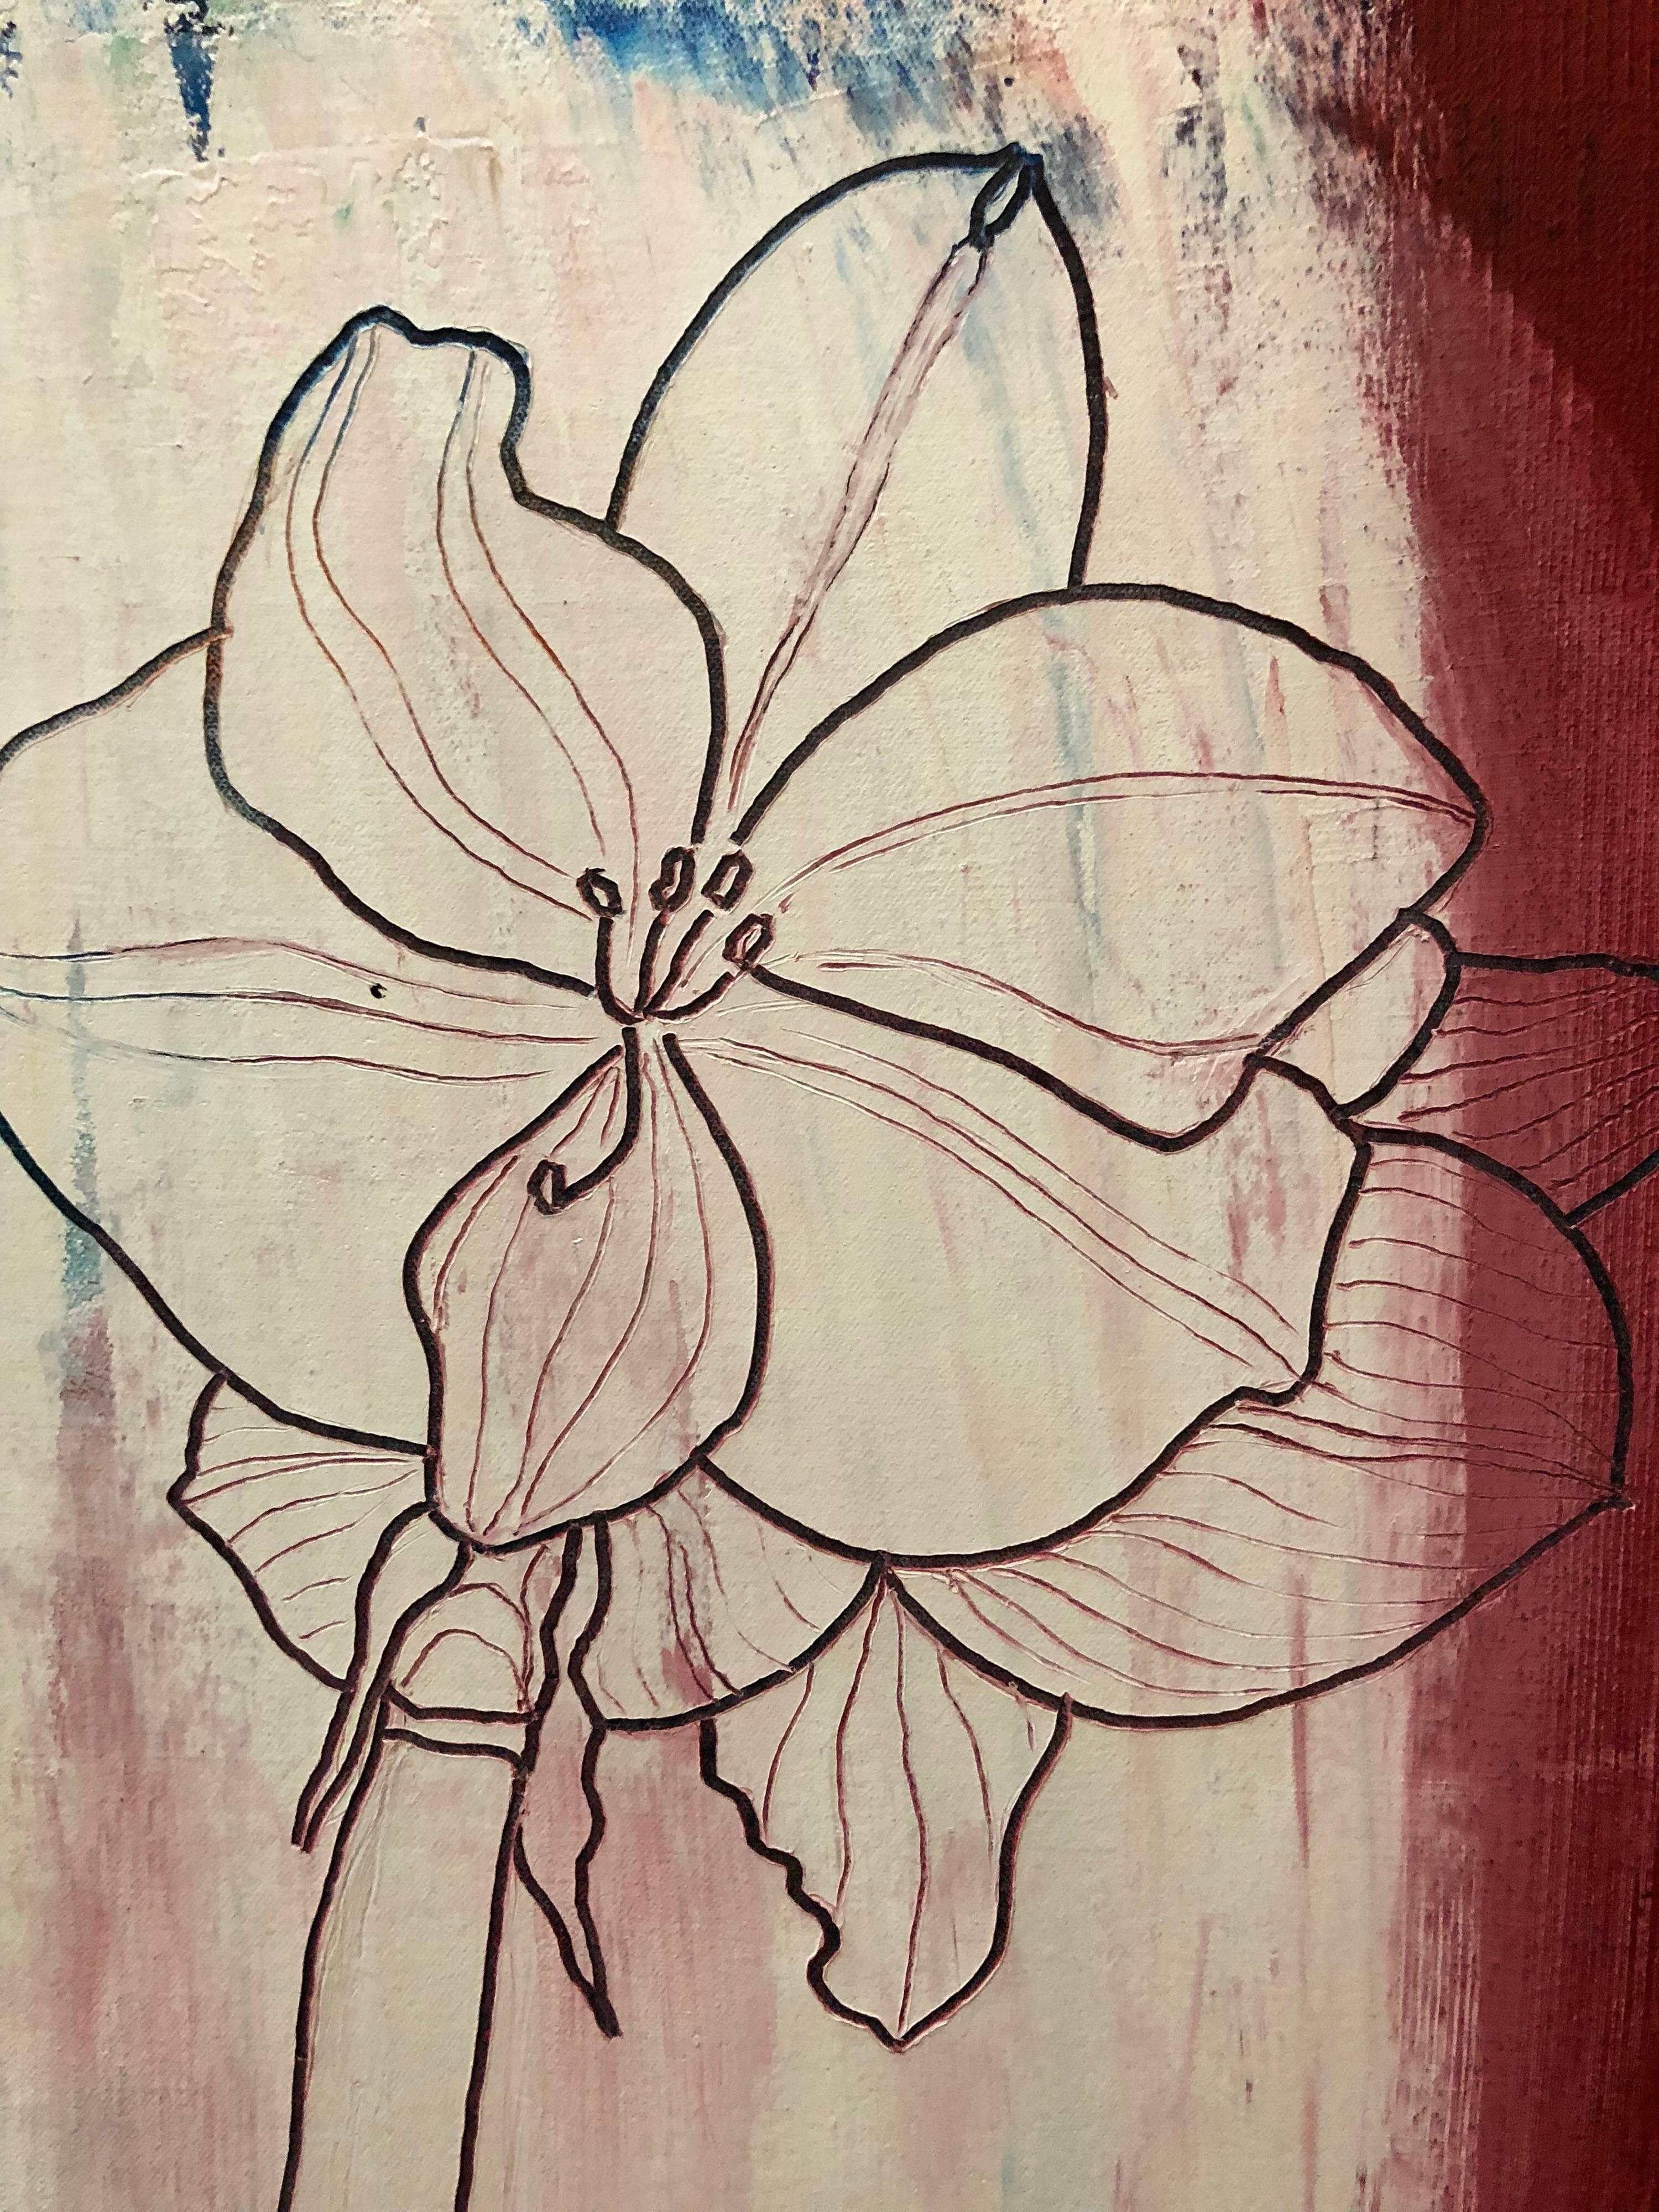 Dieses Werk ist in einer Art Sgraffito-Technik ausgeführt, bei der die Blumen quasi in die Farbe geätzt sind. 
Nobu Fukui wurde in Tokio, Japan, geboren und kam nach New York, wo er die amerikanische Staatsbürgerschaft erhielt. Von 1964 bis 65